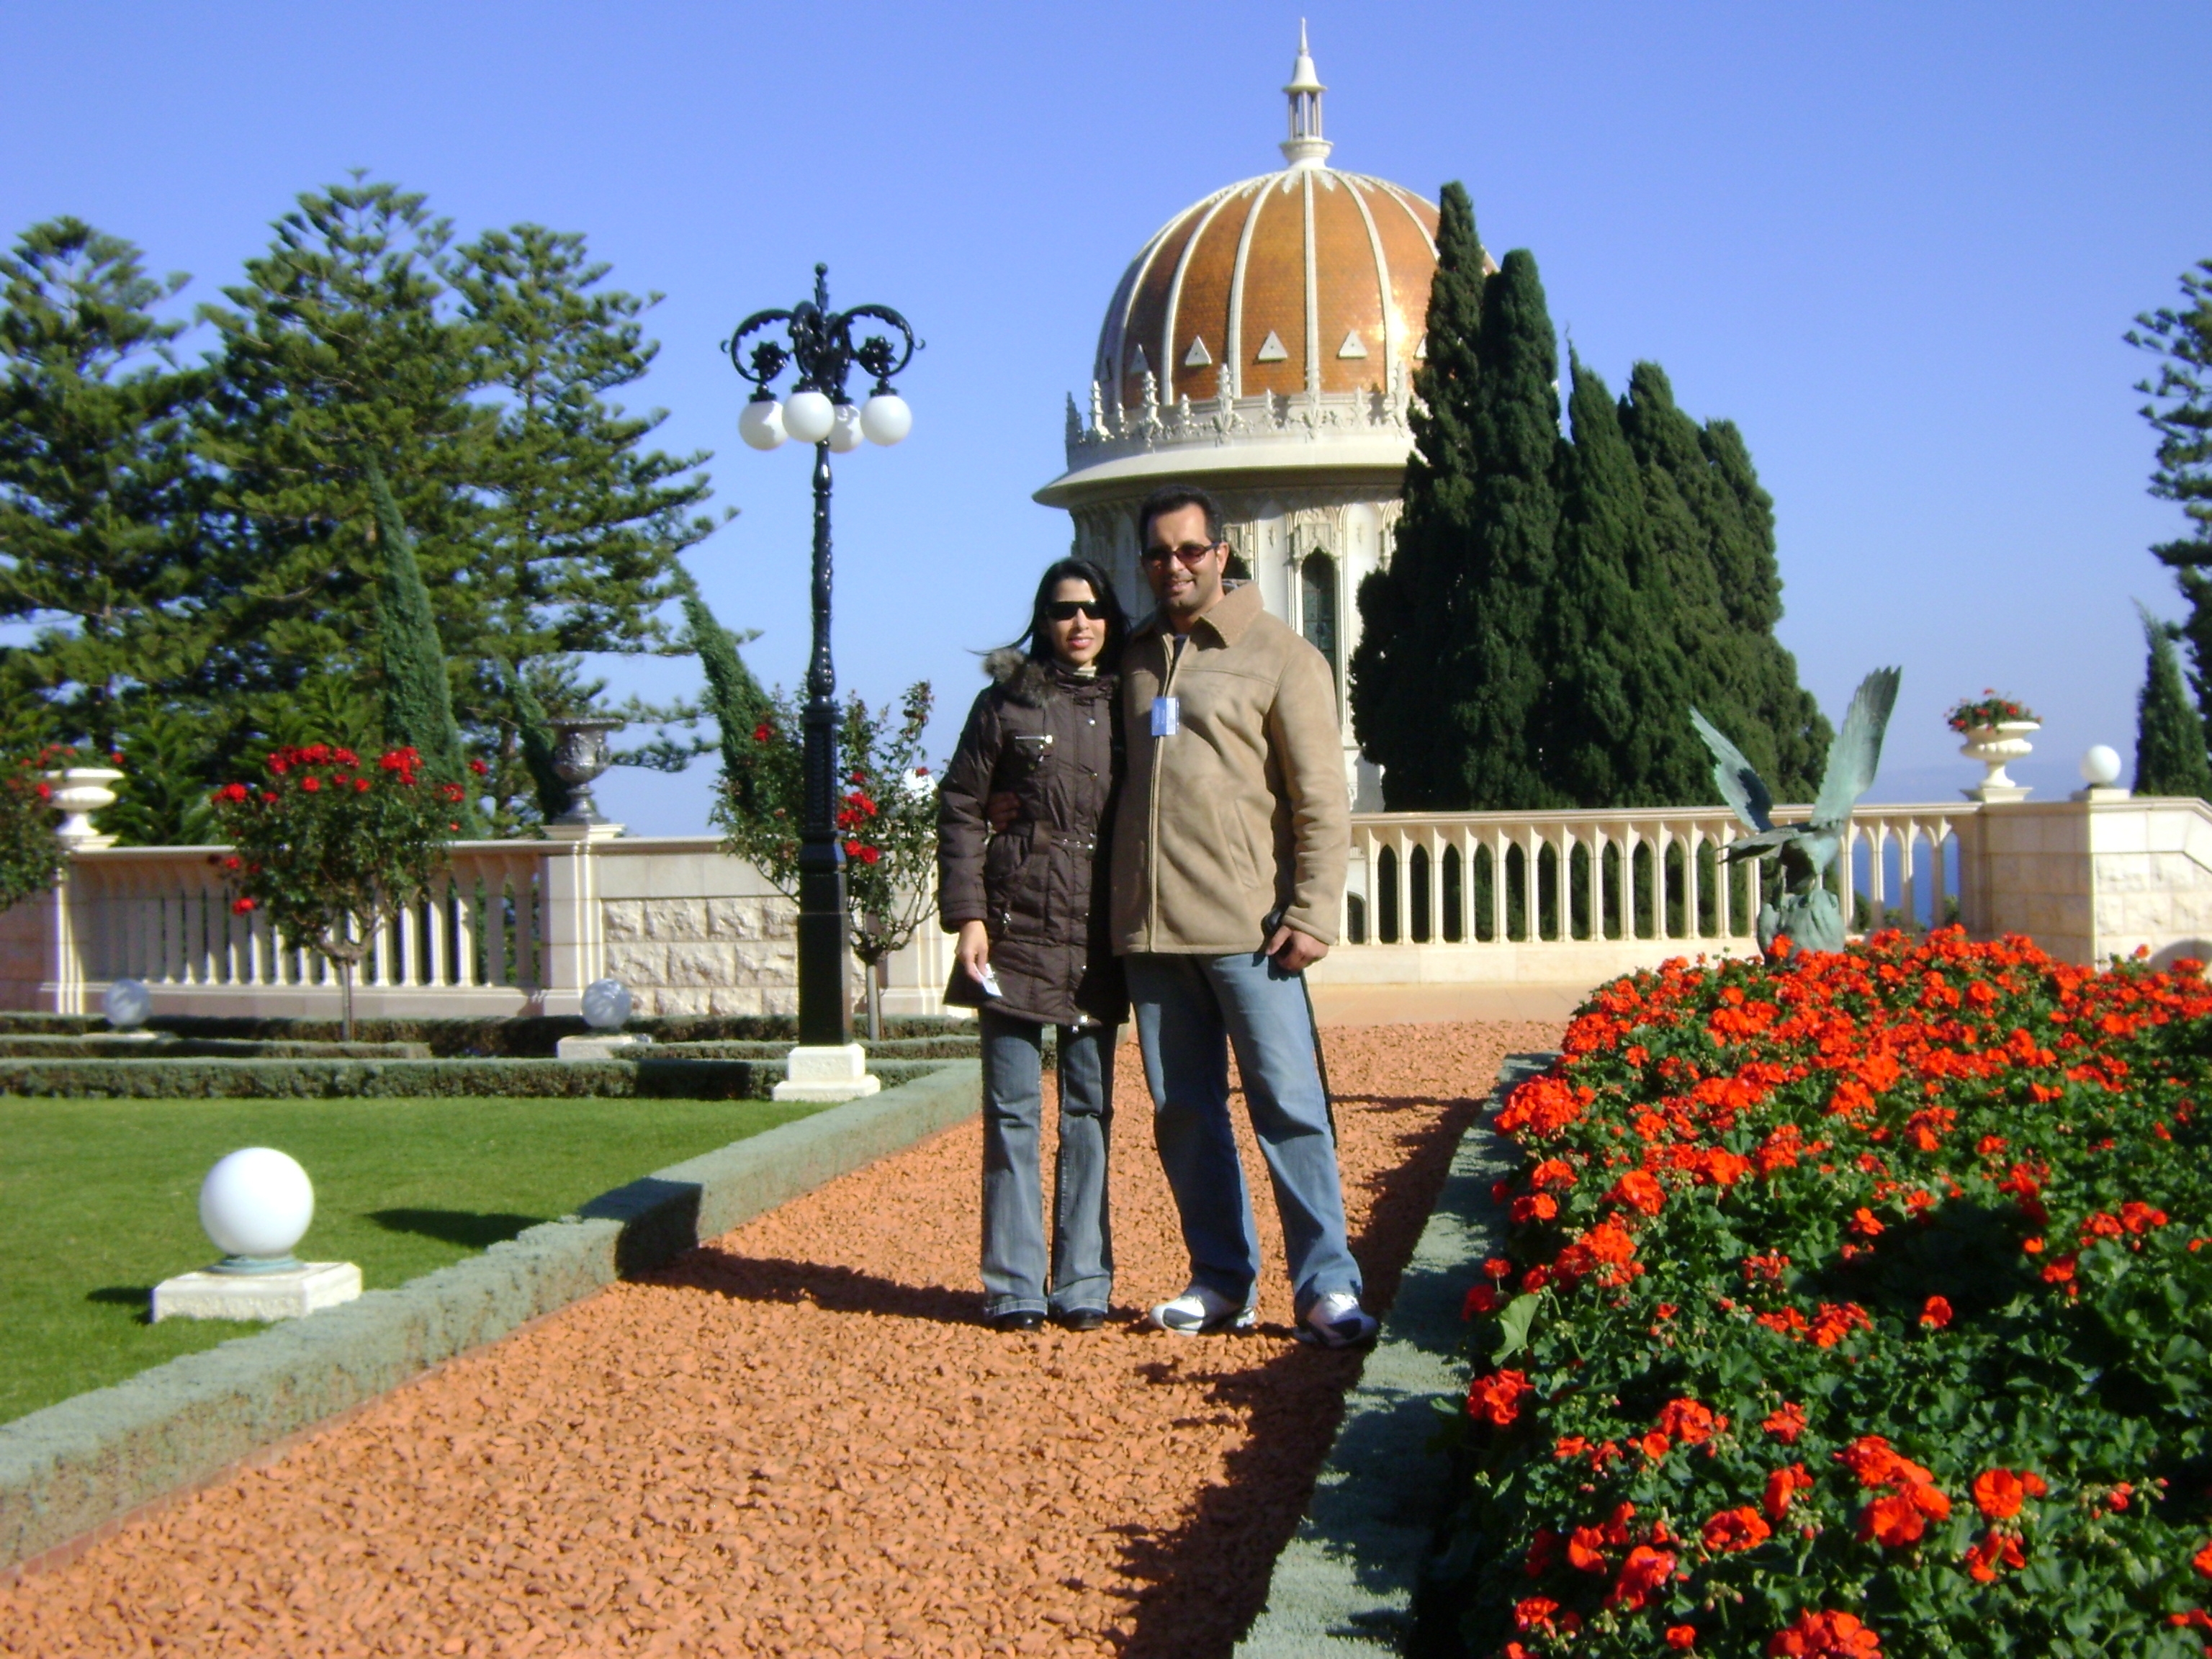 Amir e sua esposa no Santuário do Mensageiro de Deus, em Israel, ladeado pelos famosos jardins persas